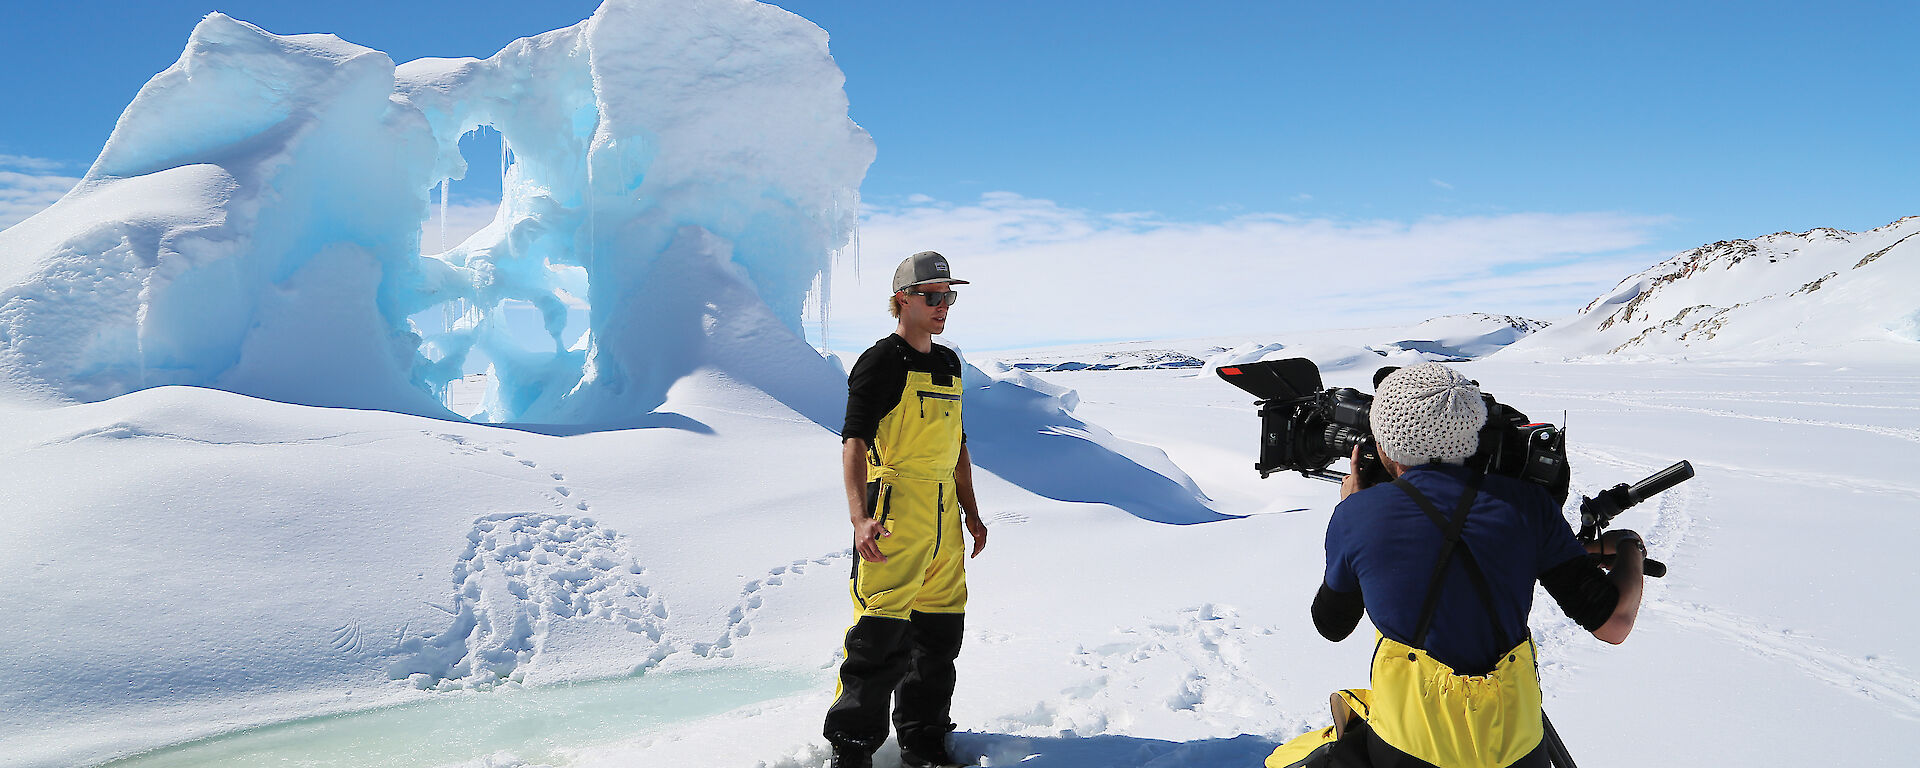 Media crew in front of an iceberg in Antarctica